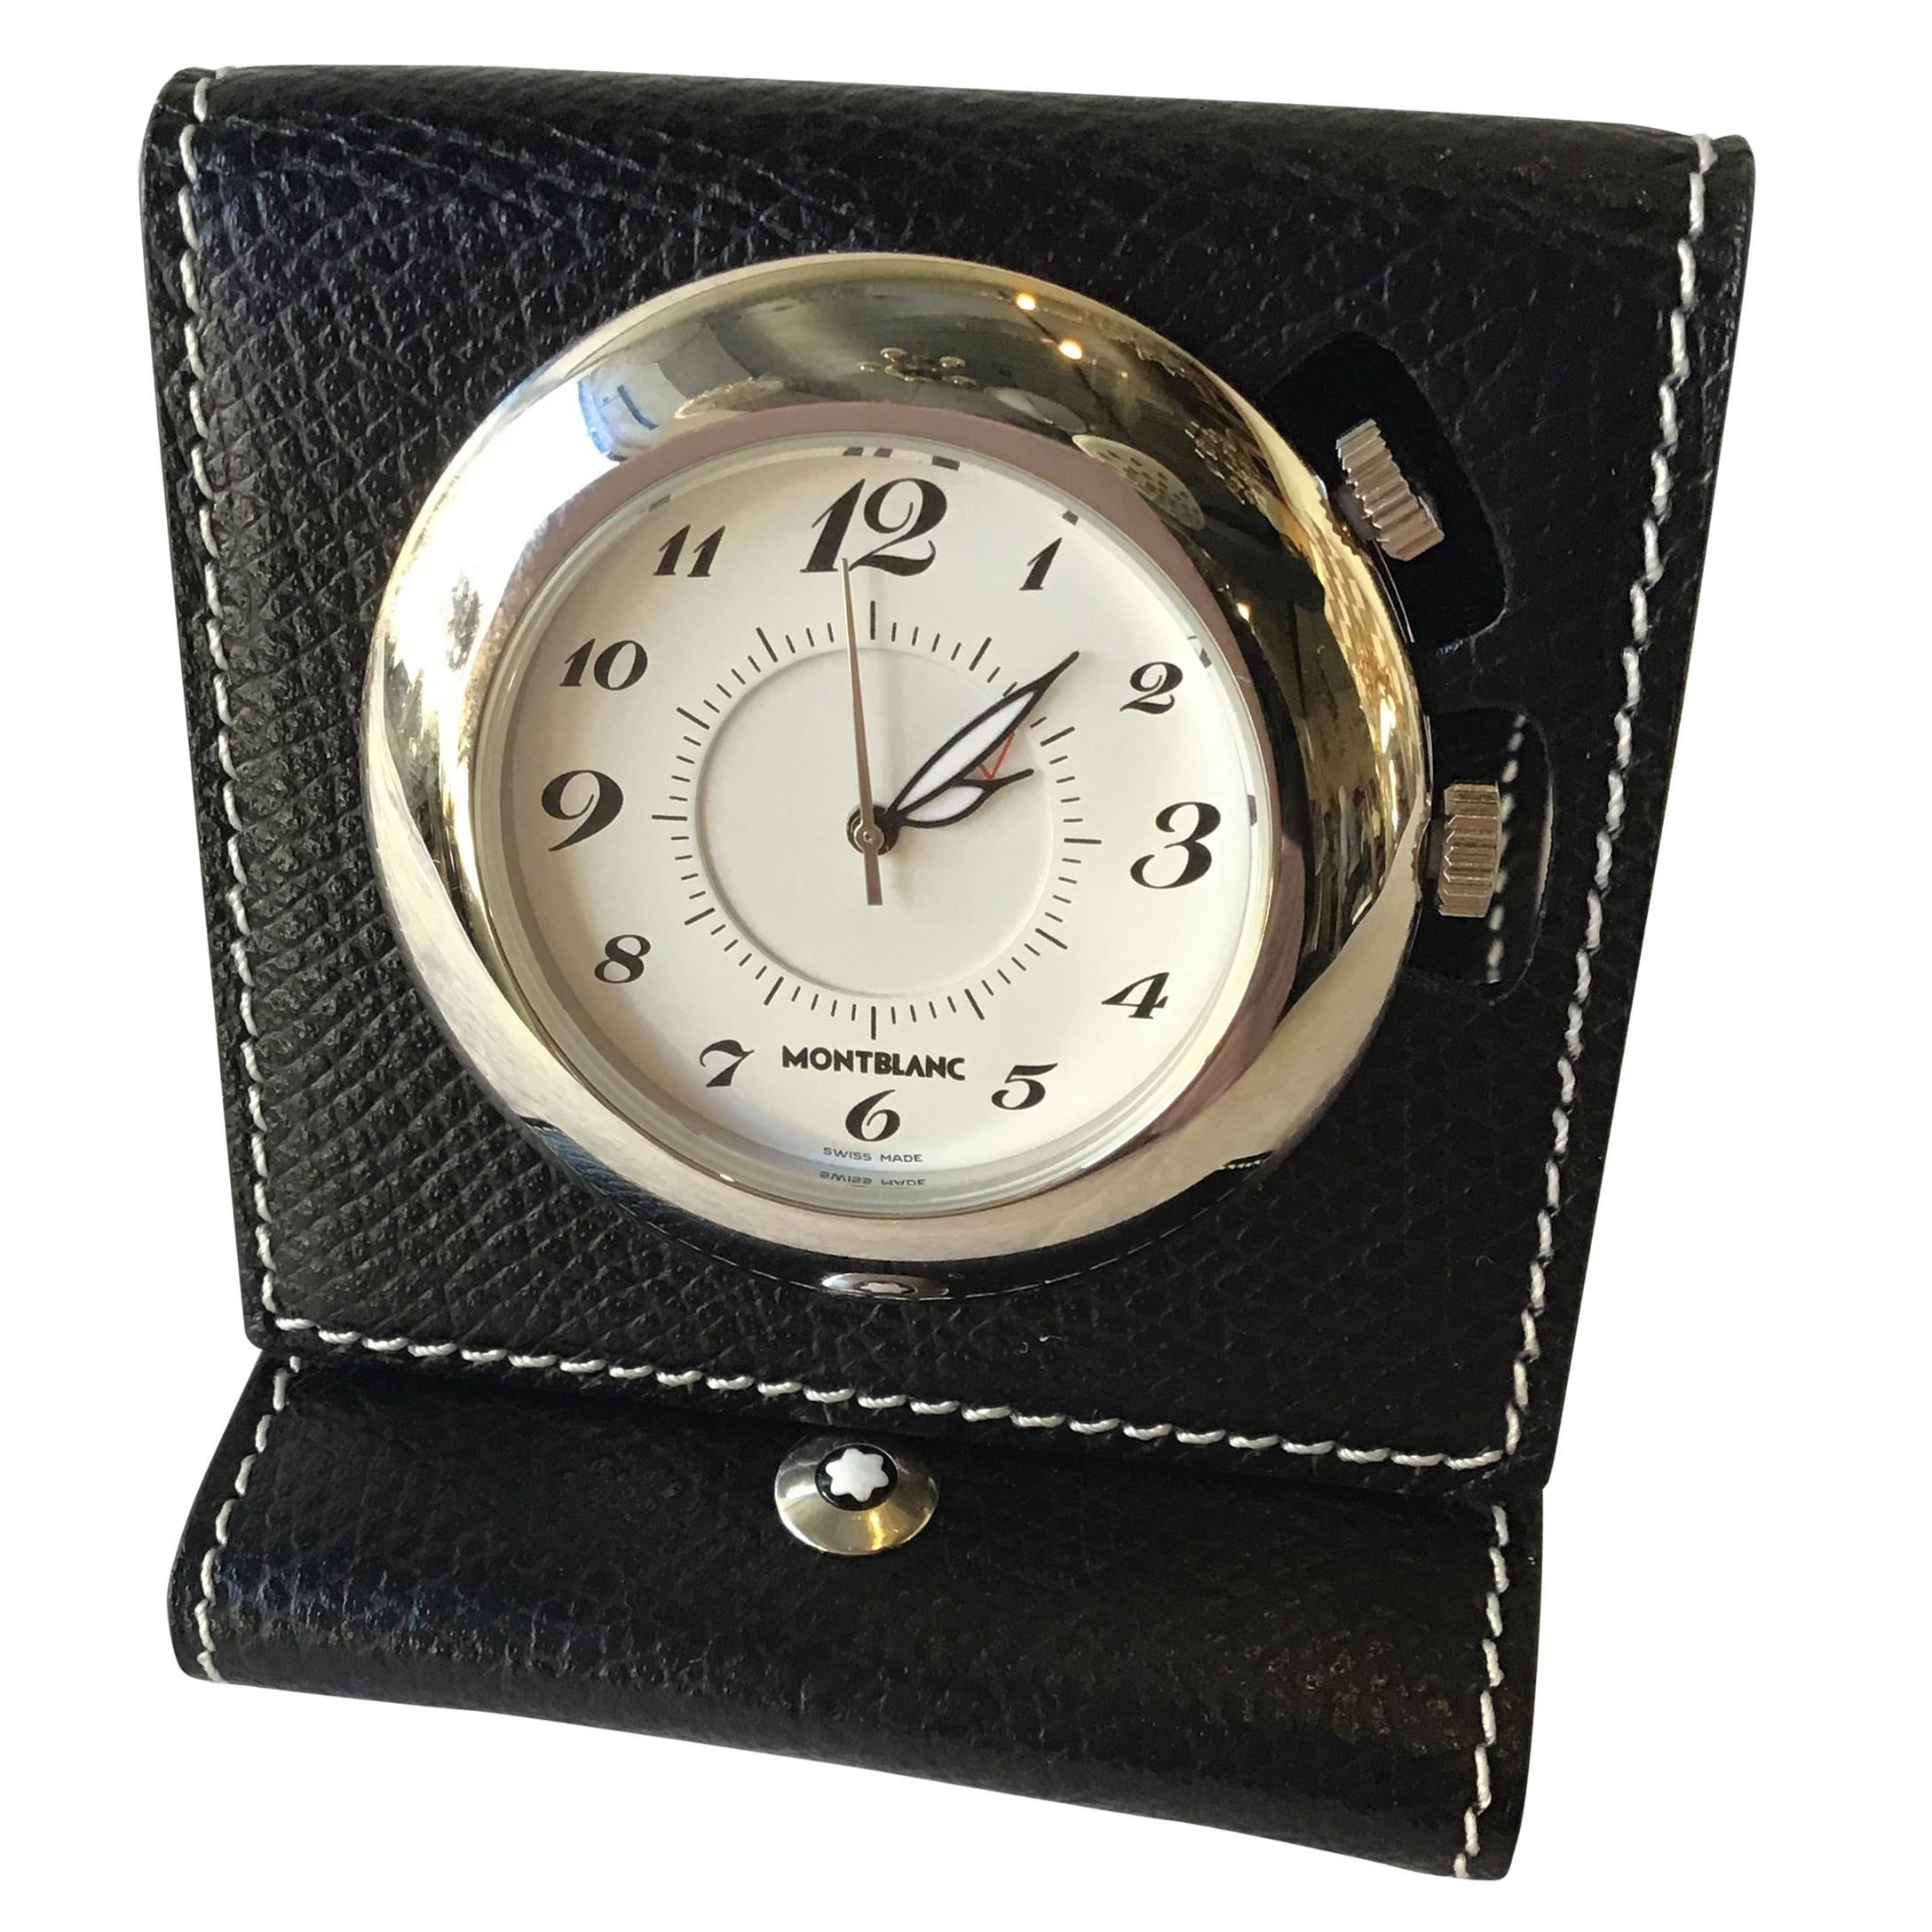 Montblanc Travel Alarm Clock 7056